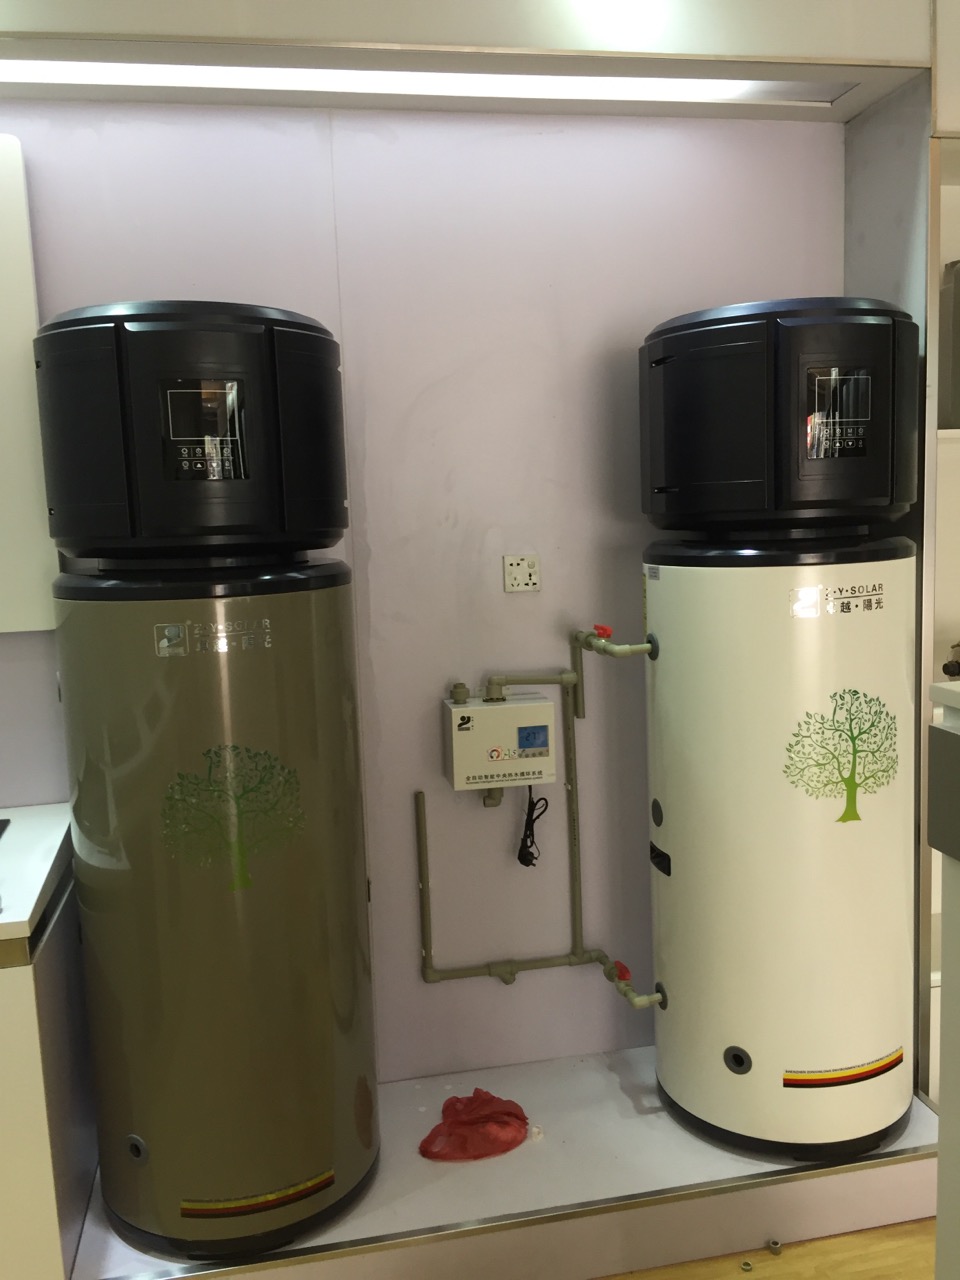 美容院发廊空气能热水器多少钱-广东中投电器有限公司